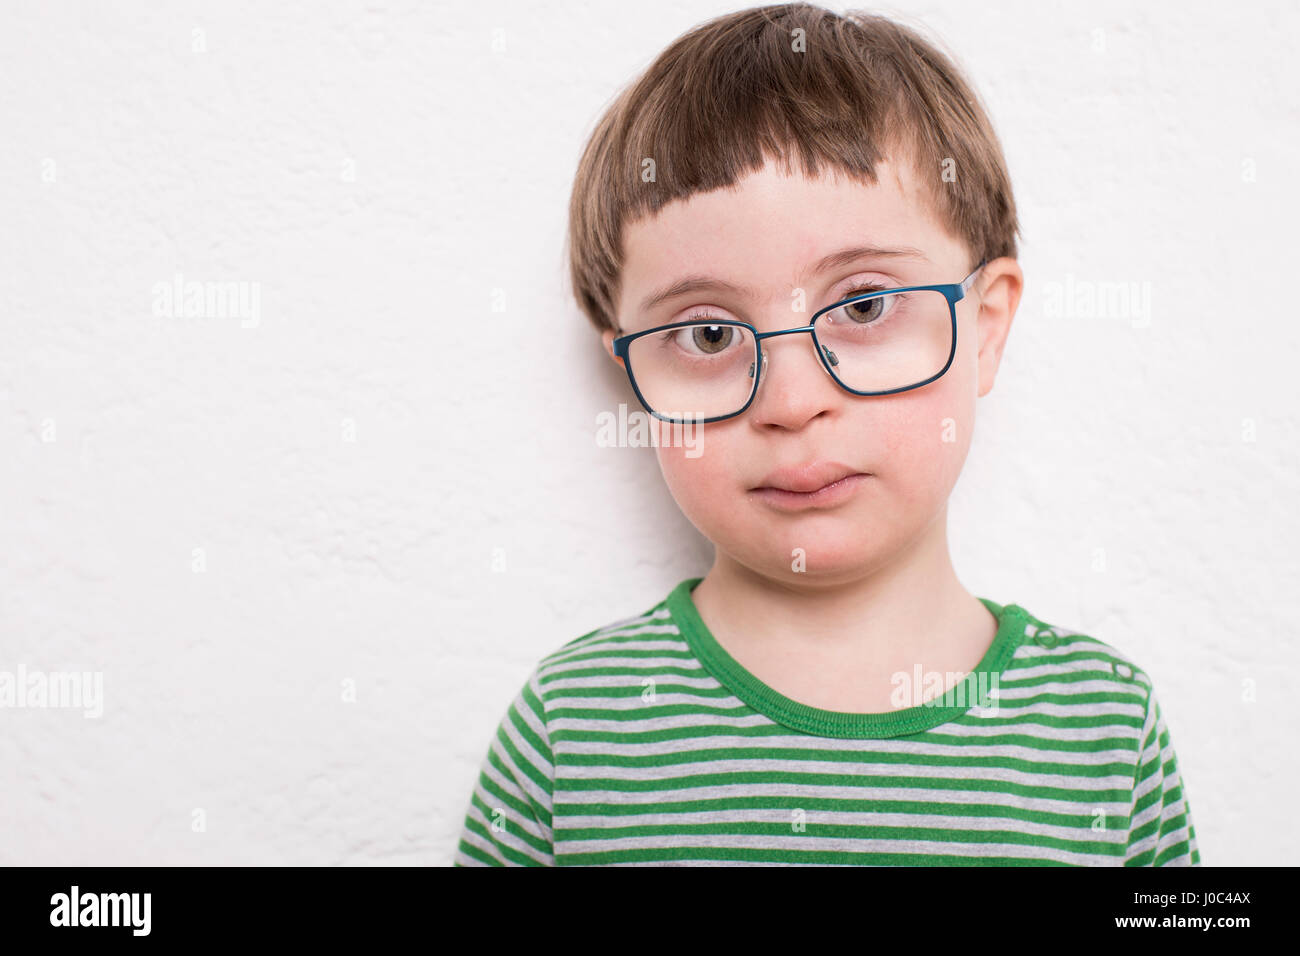 Ritratto di giovane ragazzo con gli occhiali, contro uno sfondo bianco Foto Stock